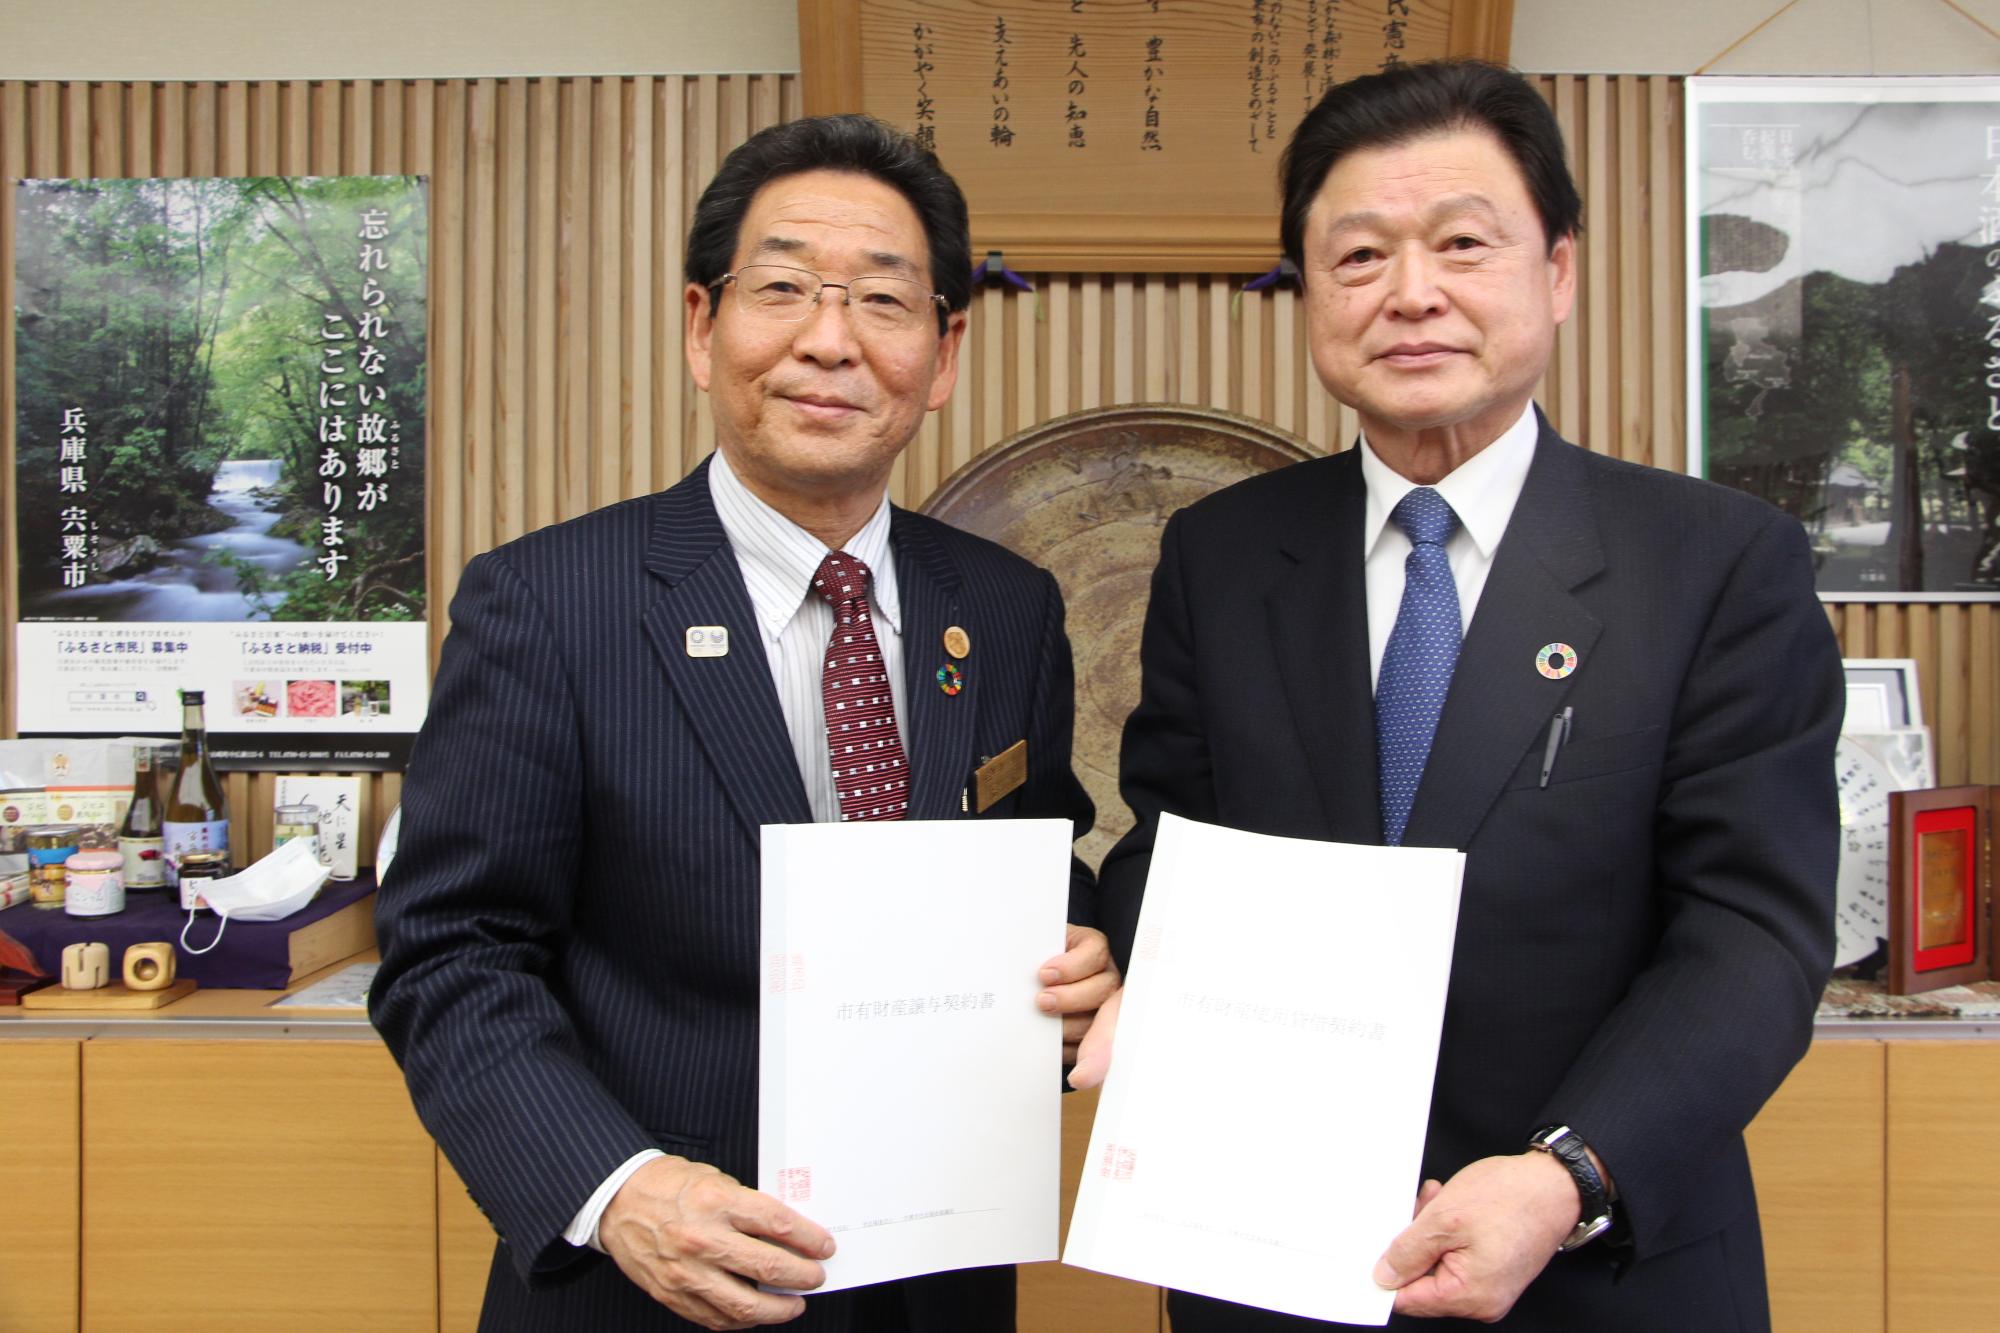 宍粟市長と秋武会長がそれぞれの手に契約書を持ち並んで立っている写真